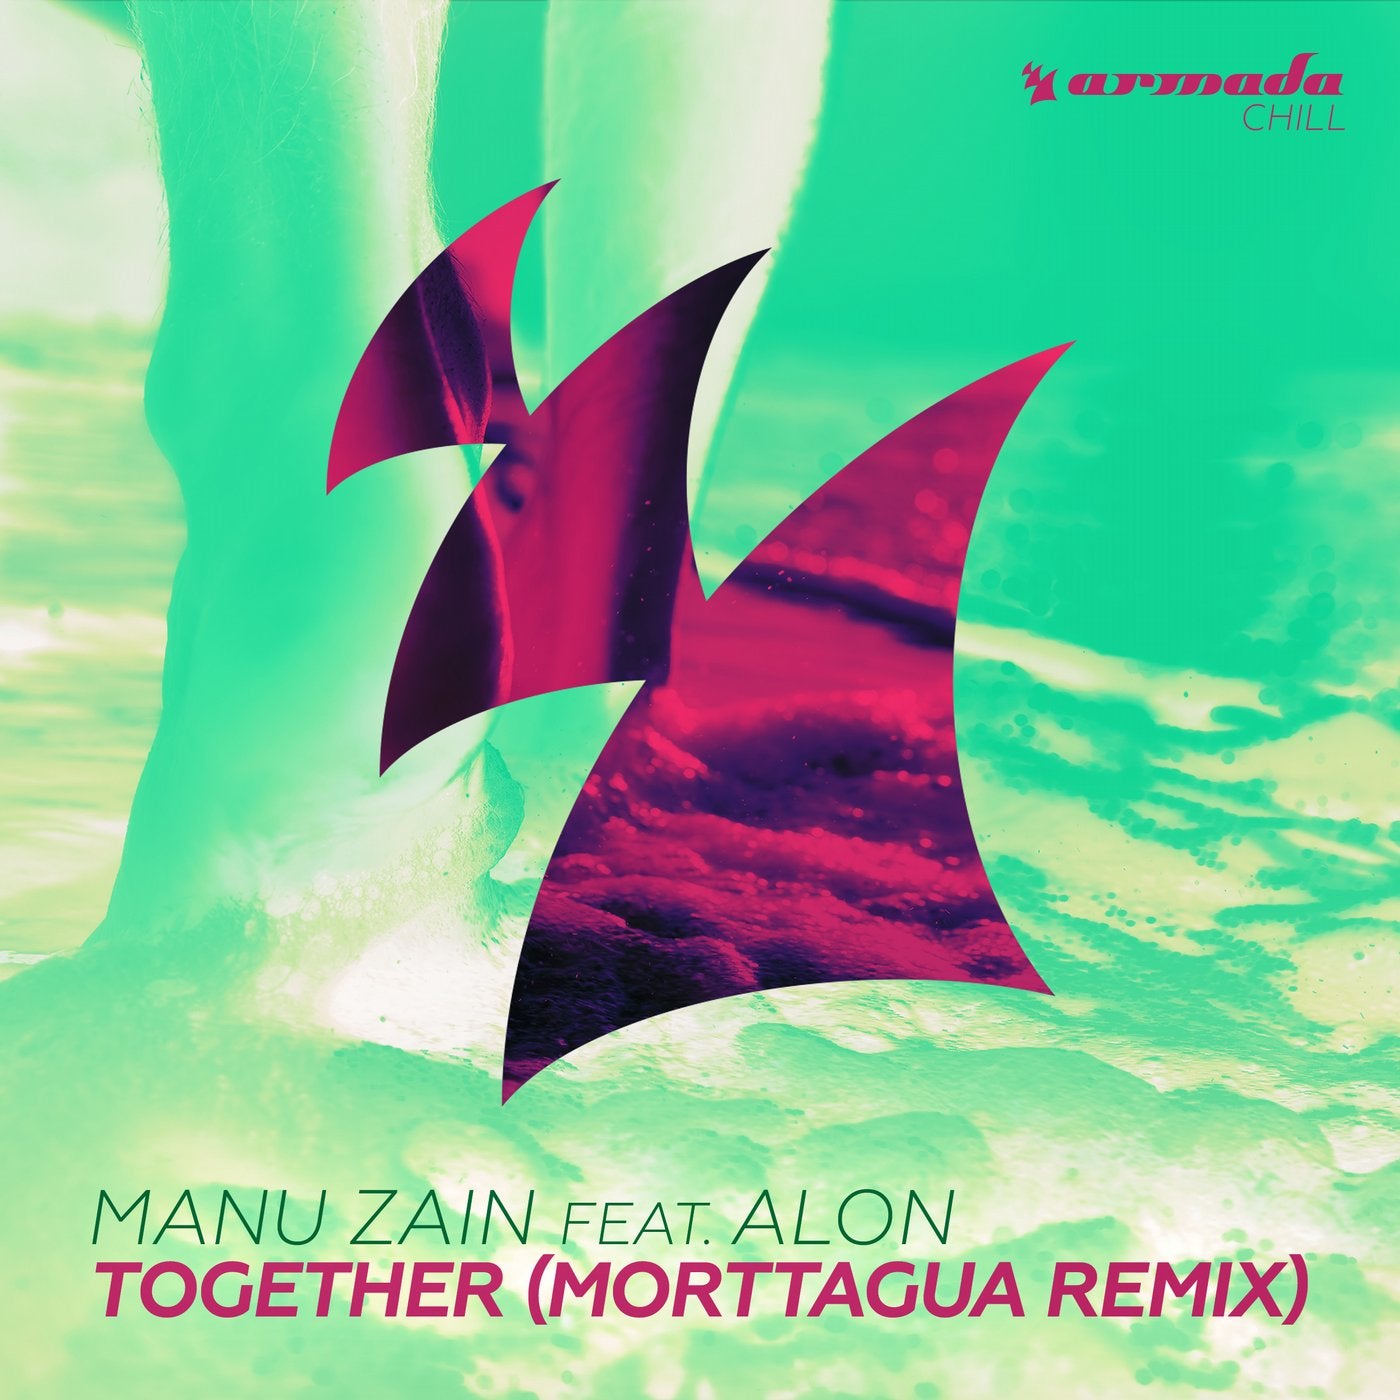 Together - Morttagua Remix